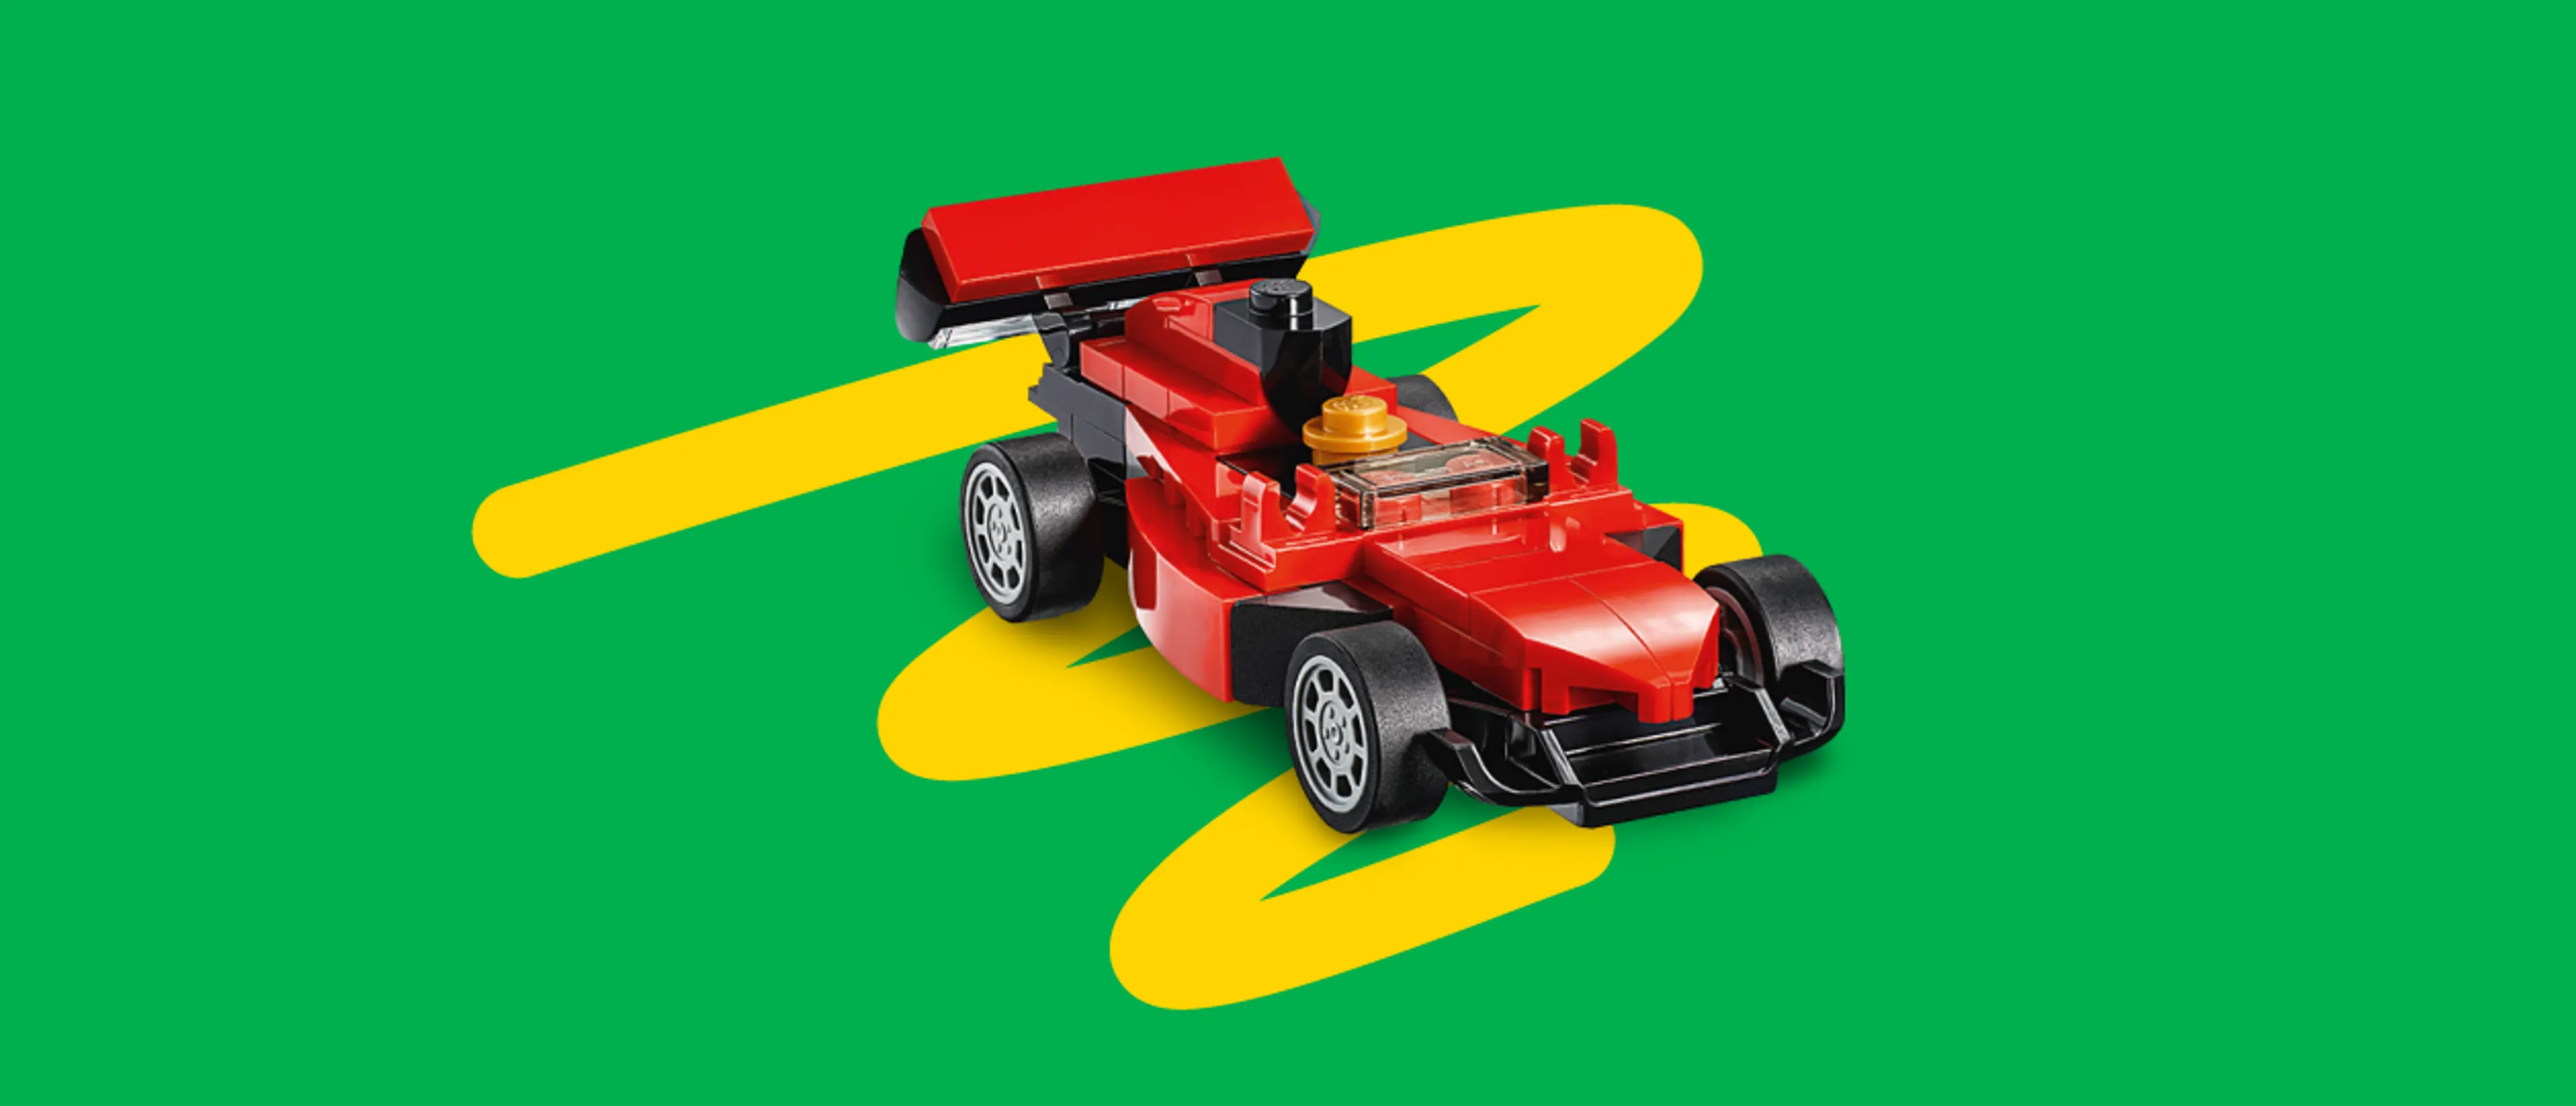 レゴ レーシングカー